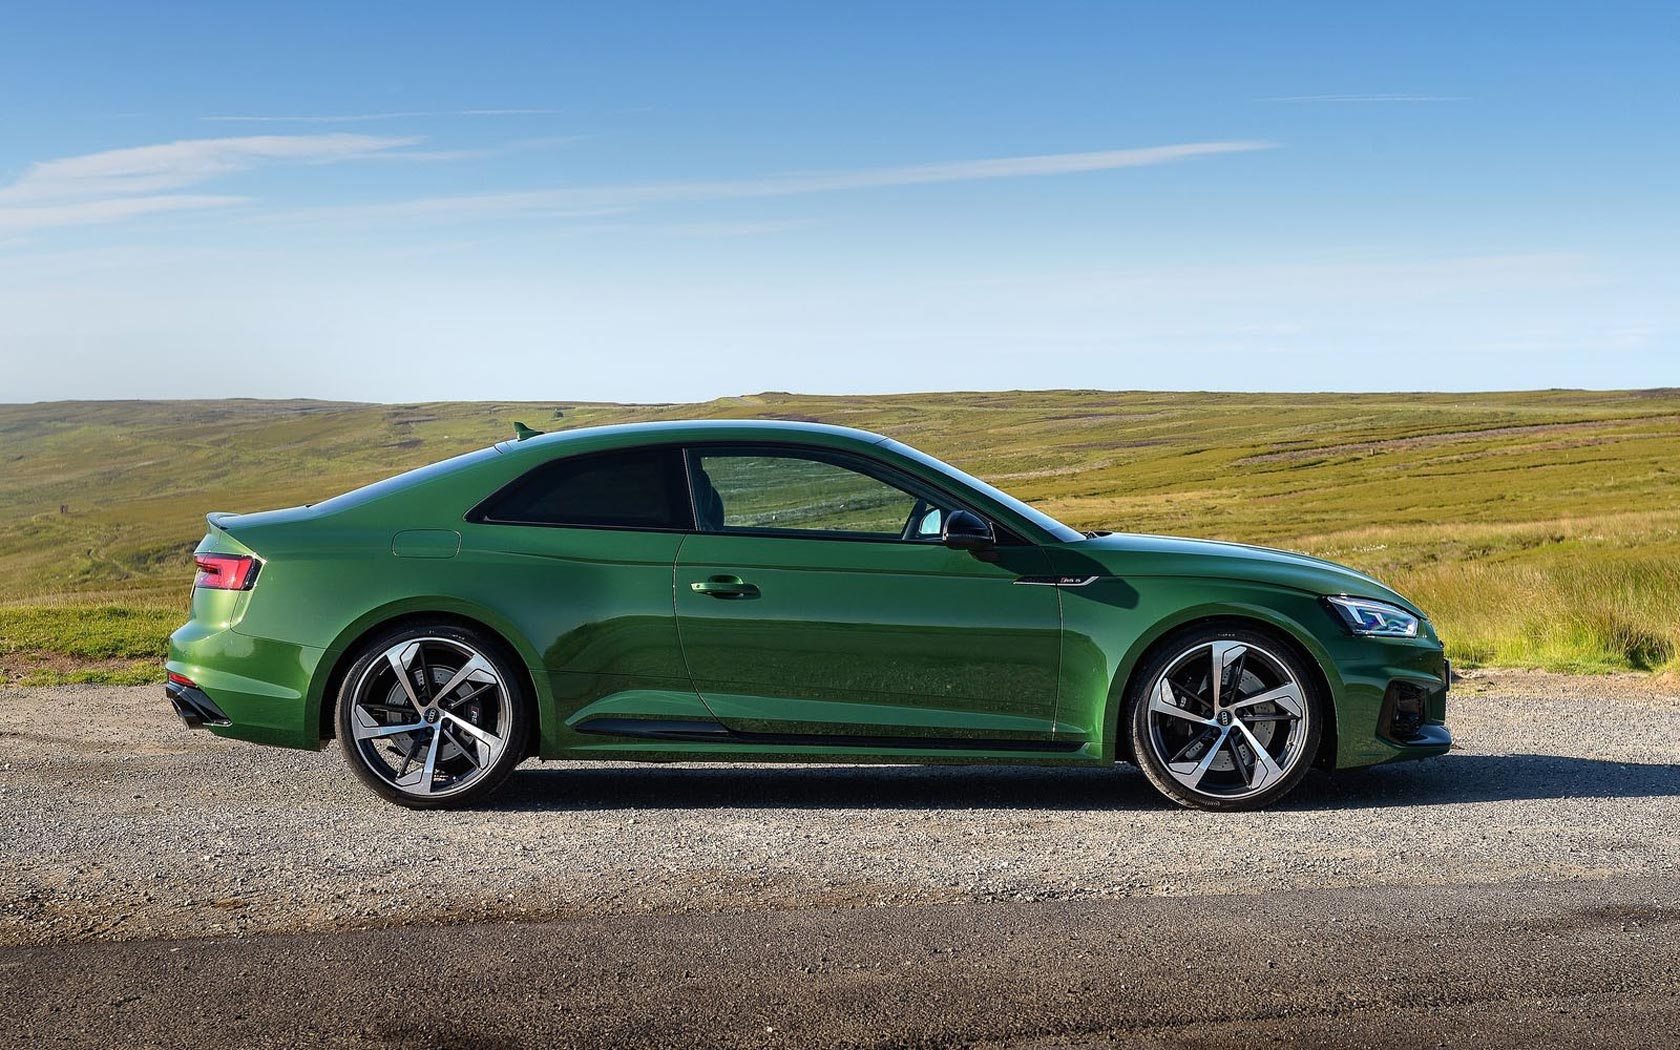  Audi RS5 (2017-2019)